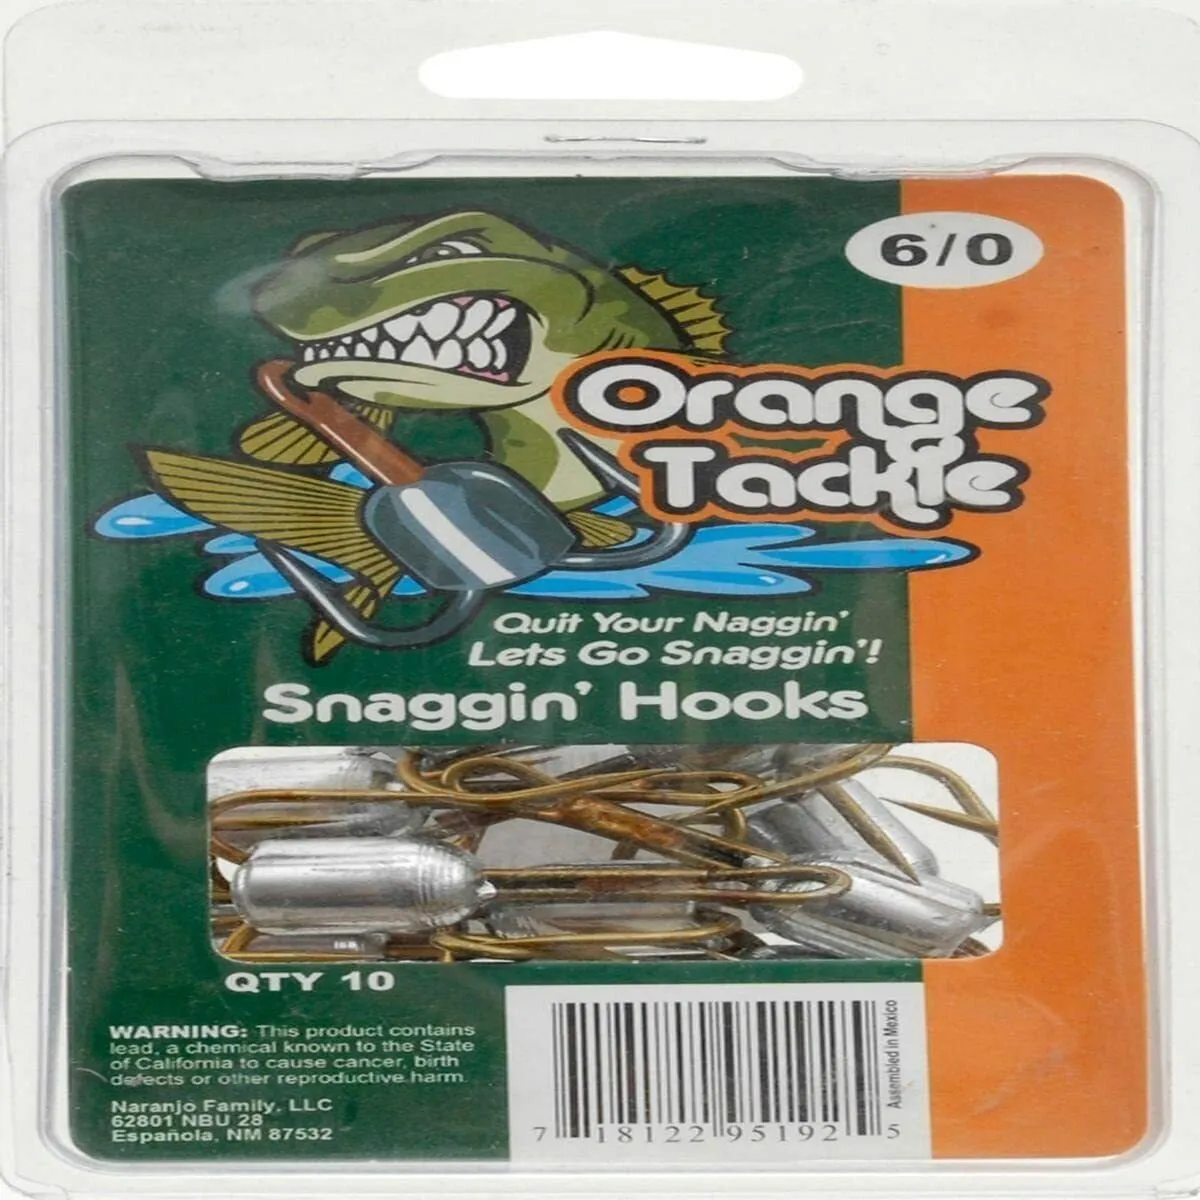 Orange Snagging Hooks (10 Count), 6/0, Green